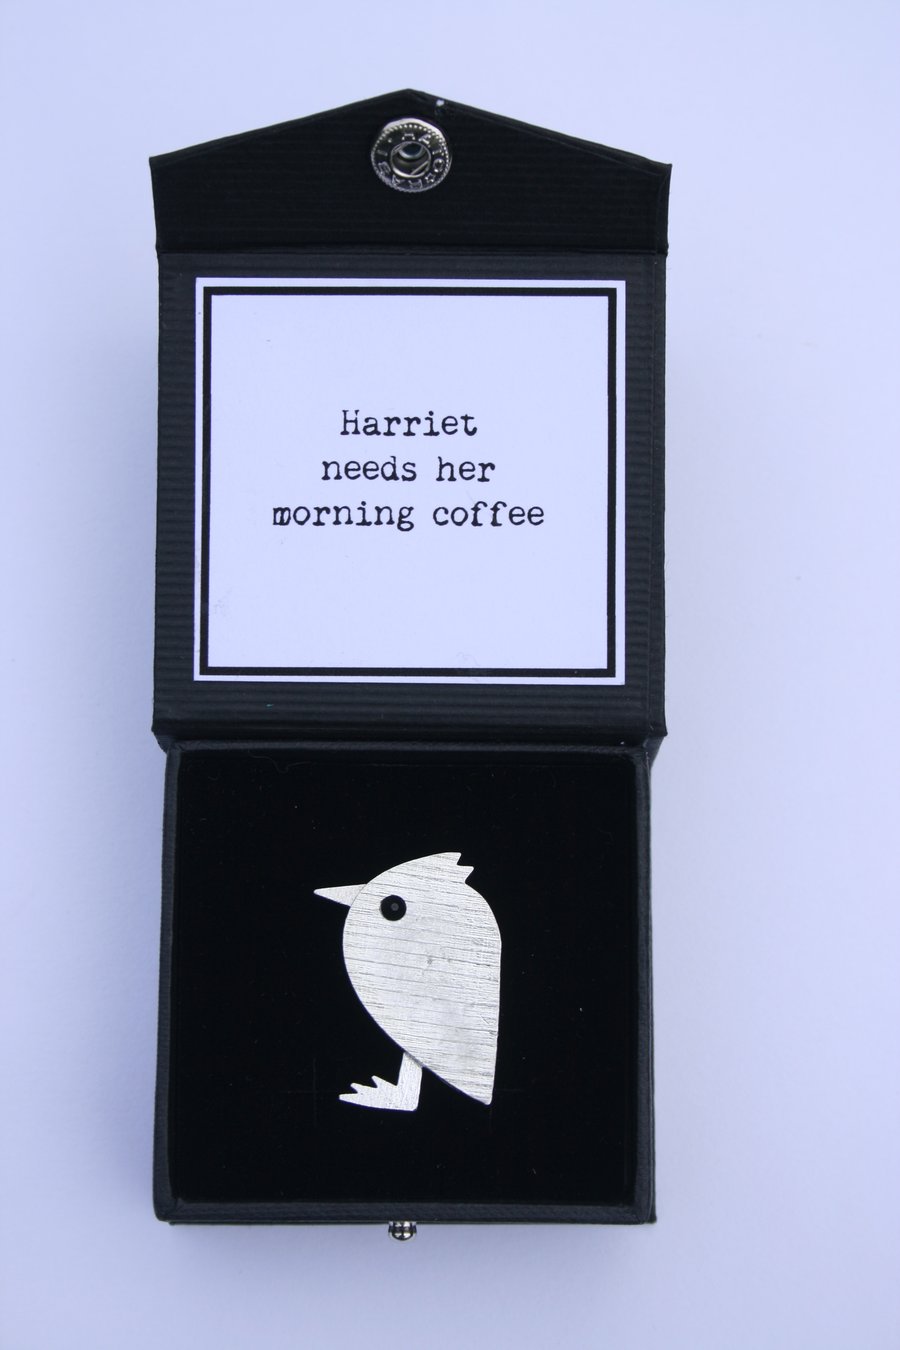 Harriet needs her morning coffee